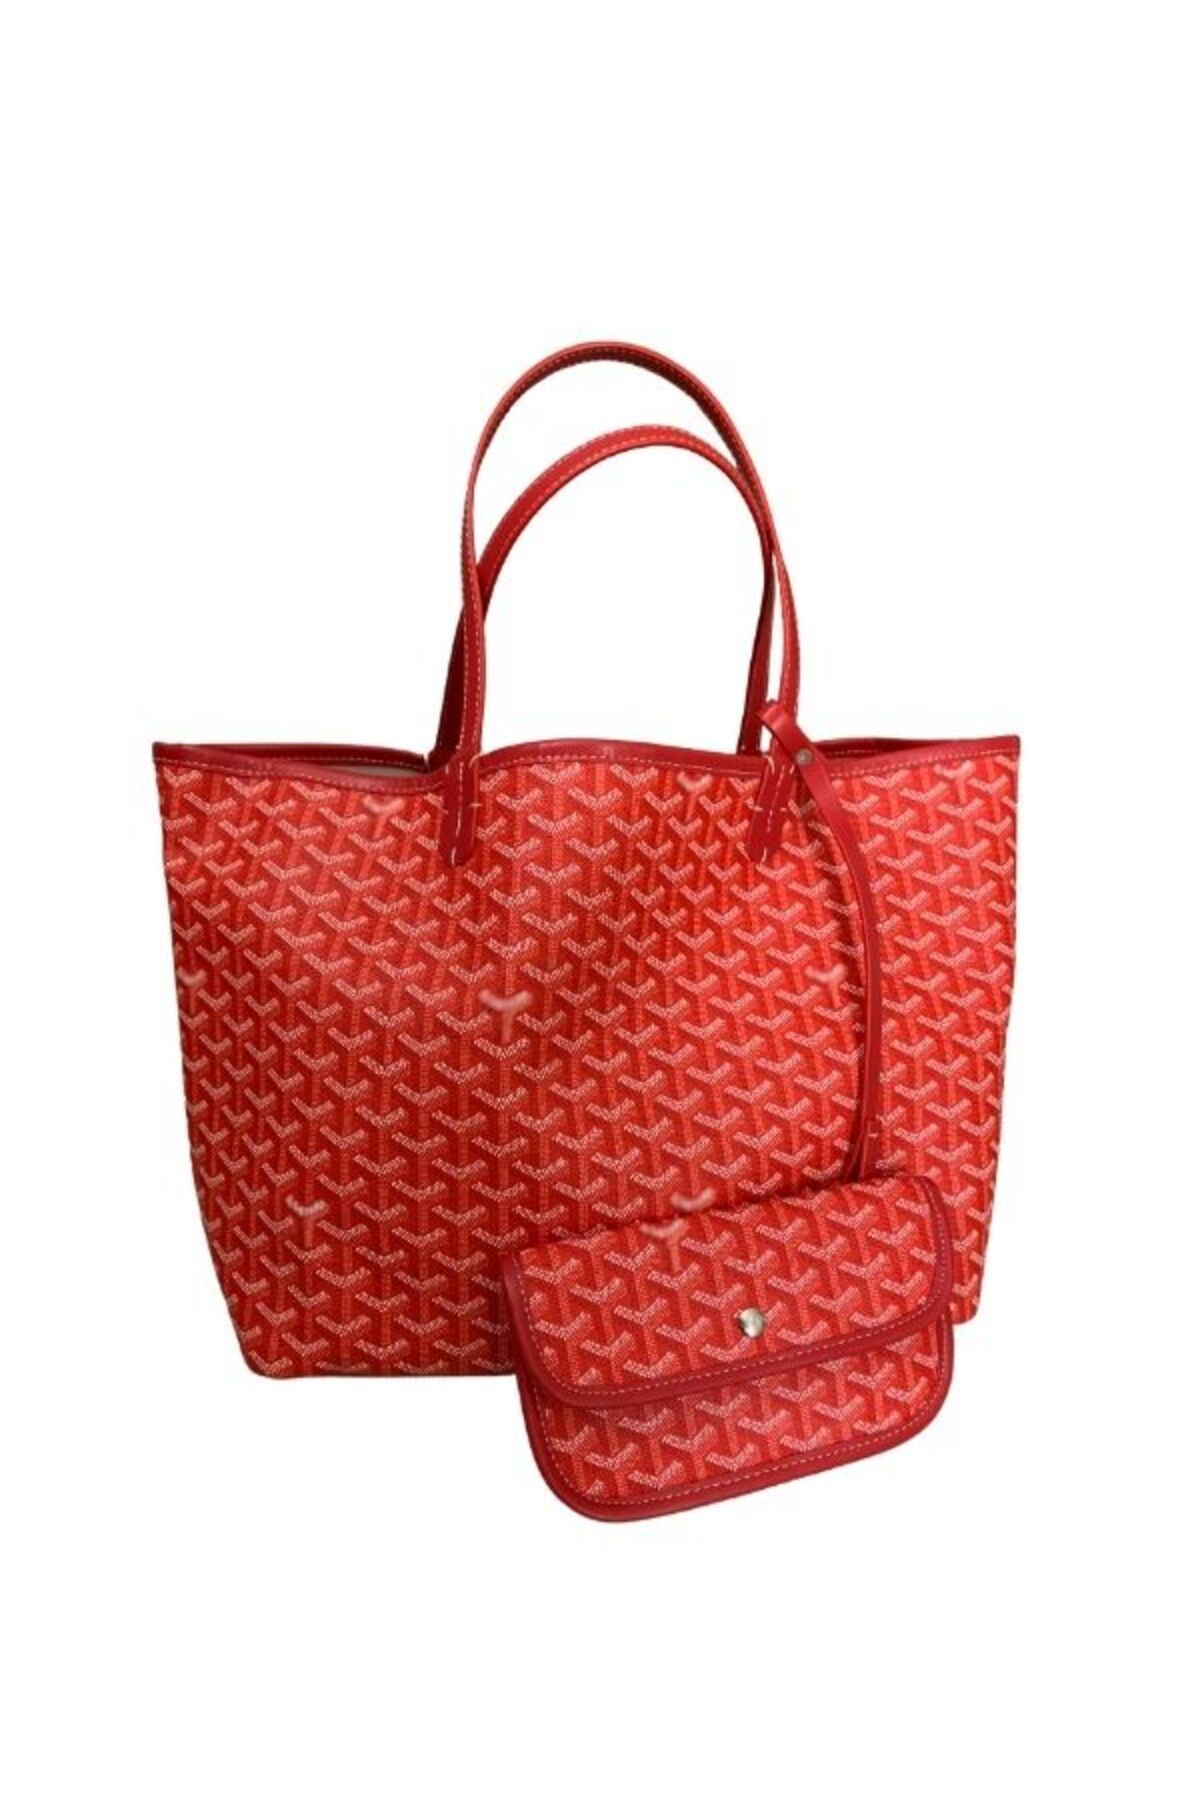 Bugi Bag Kırmızı Renk Monogram Detaylı Yavrulu Kadın Omuz Çantası Tote Bag Goyard Style